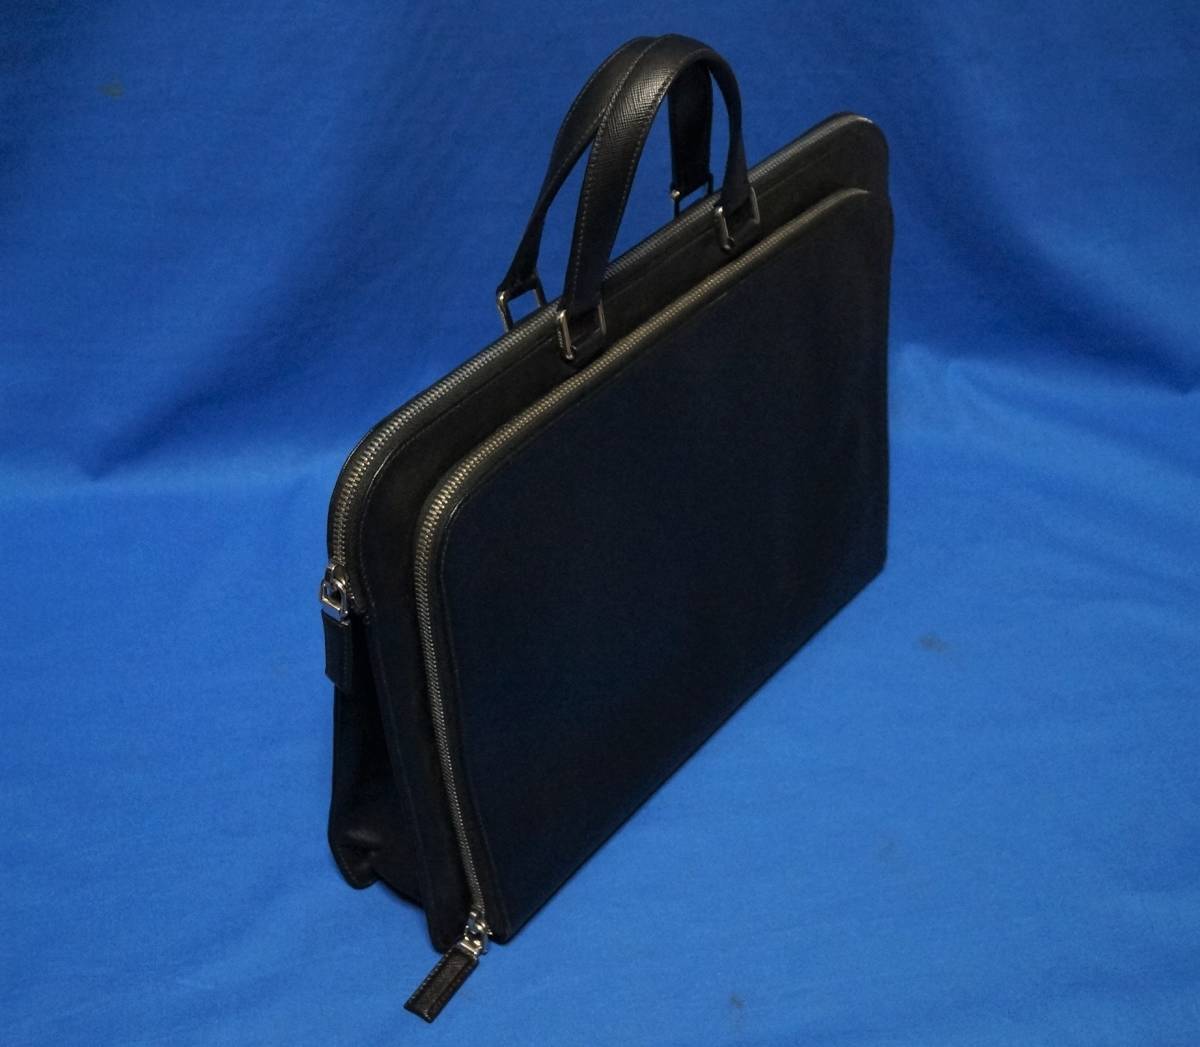 # great popularity # PRADA original leather business bag 